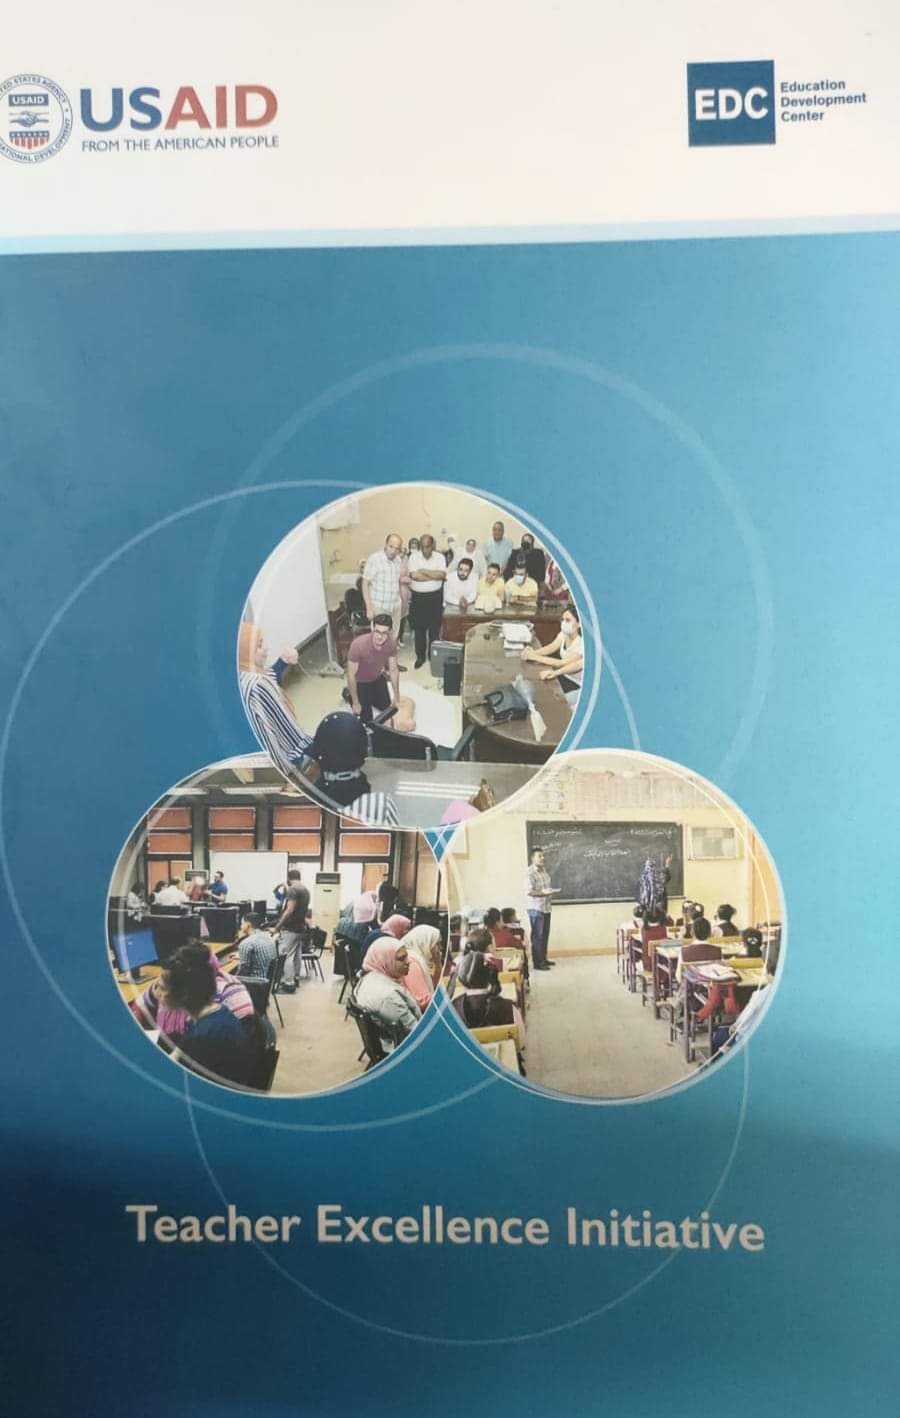 كلية التربية جامعة حلوان تشارك في مبادرة تميز المعلم المنعقدة